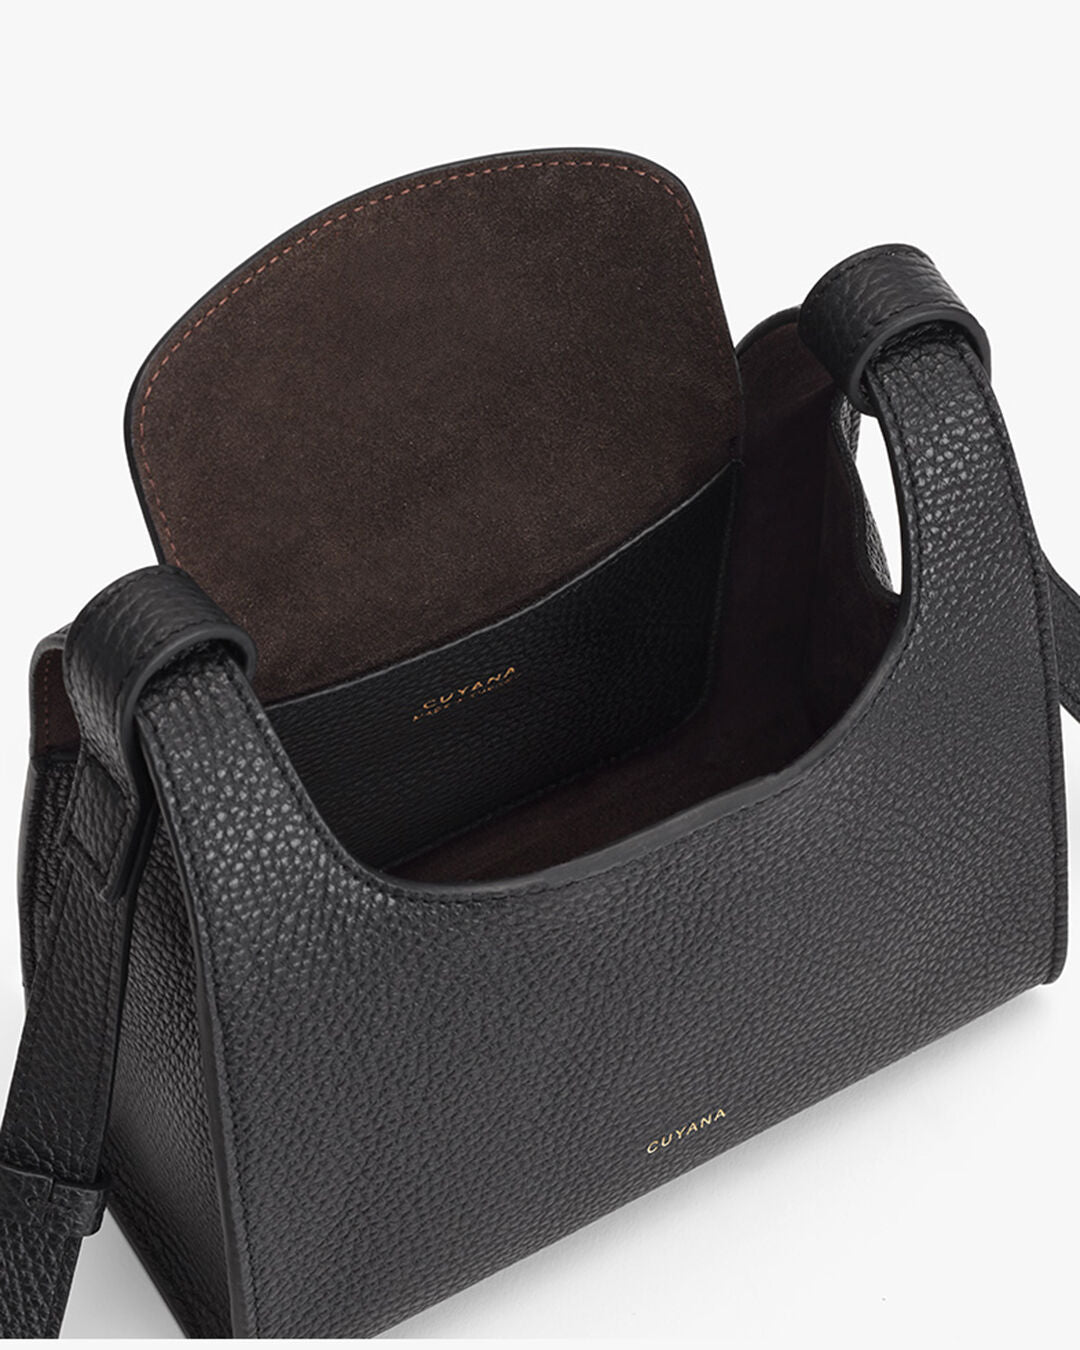 Cuyana Oversized Double Loop Leather Shoulder Bag - Brown Shoulder